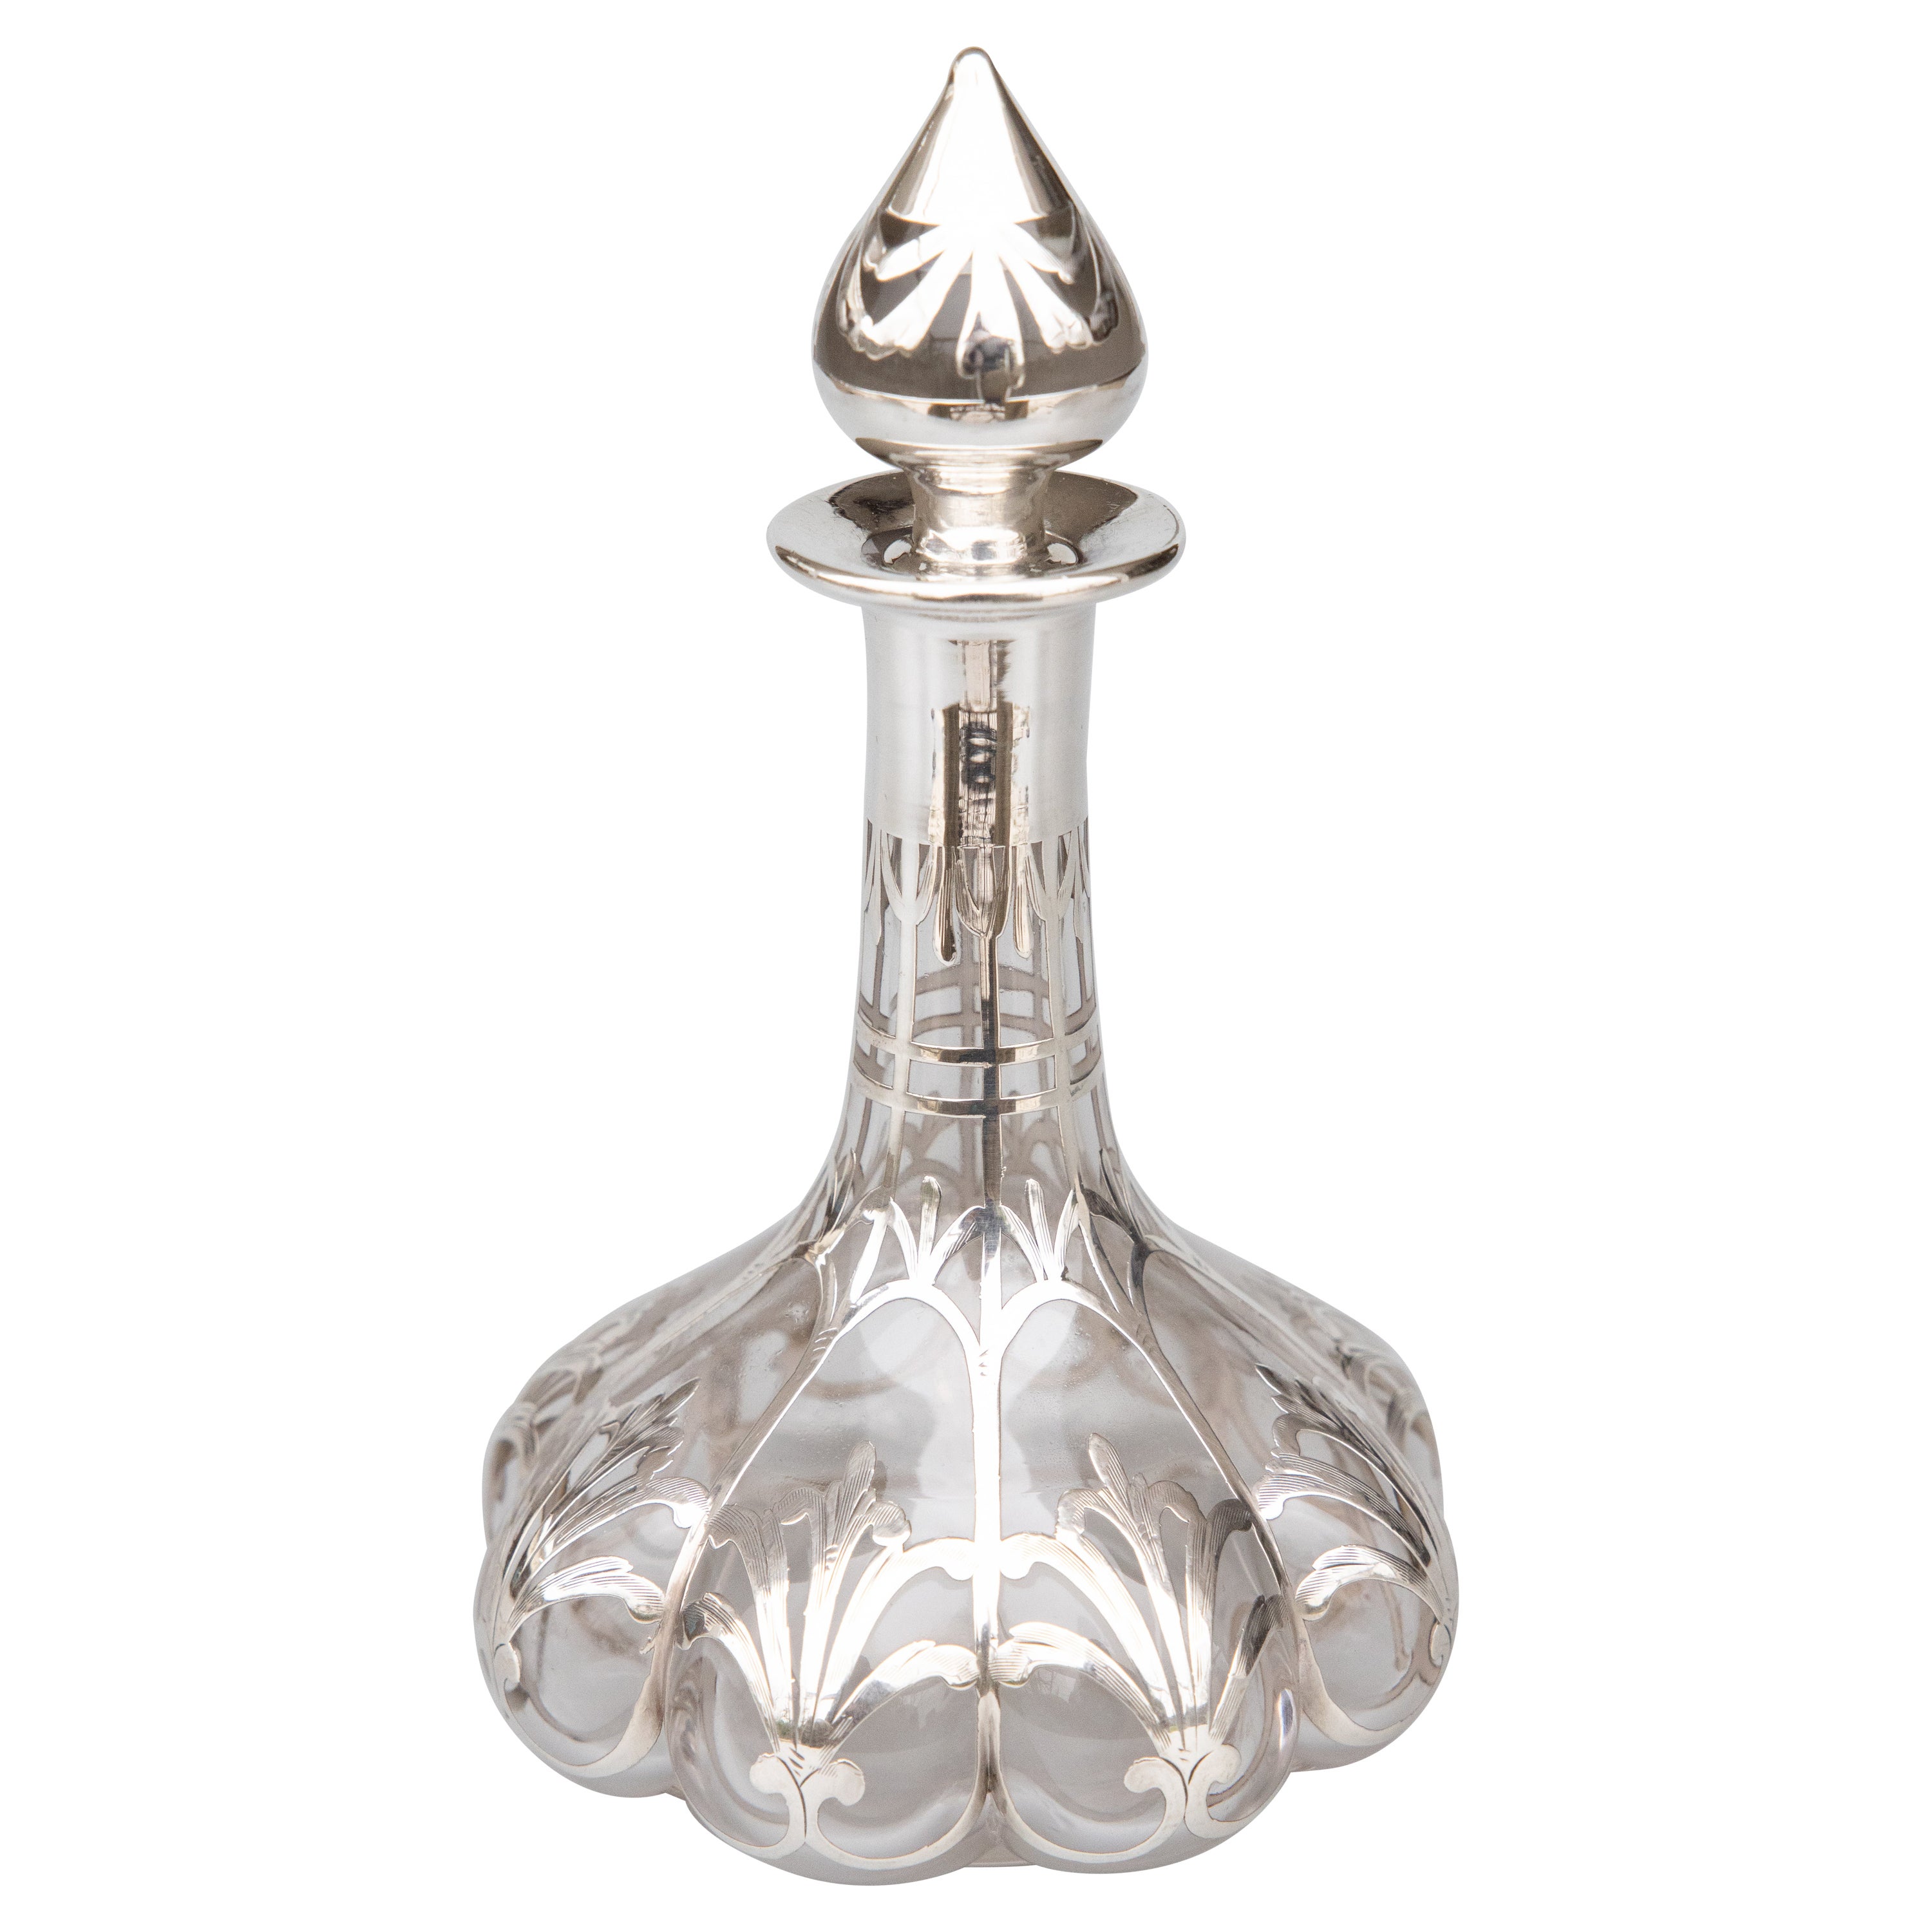 Flacon de parfum en verre incrusté d'argent Art Nouveau français, vers 1900